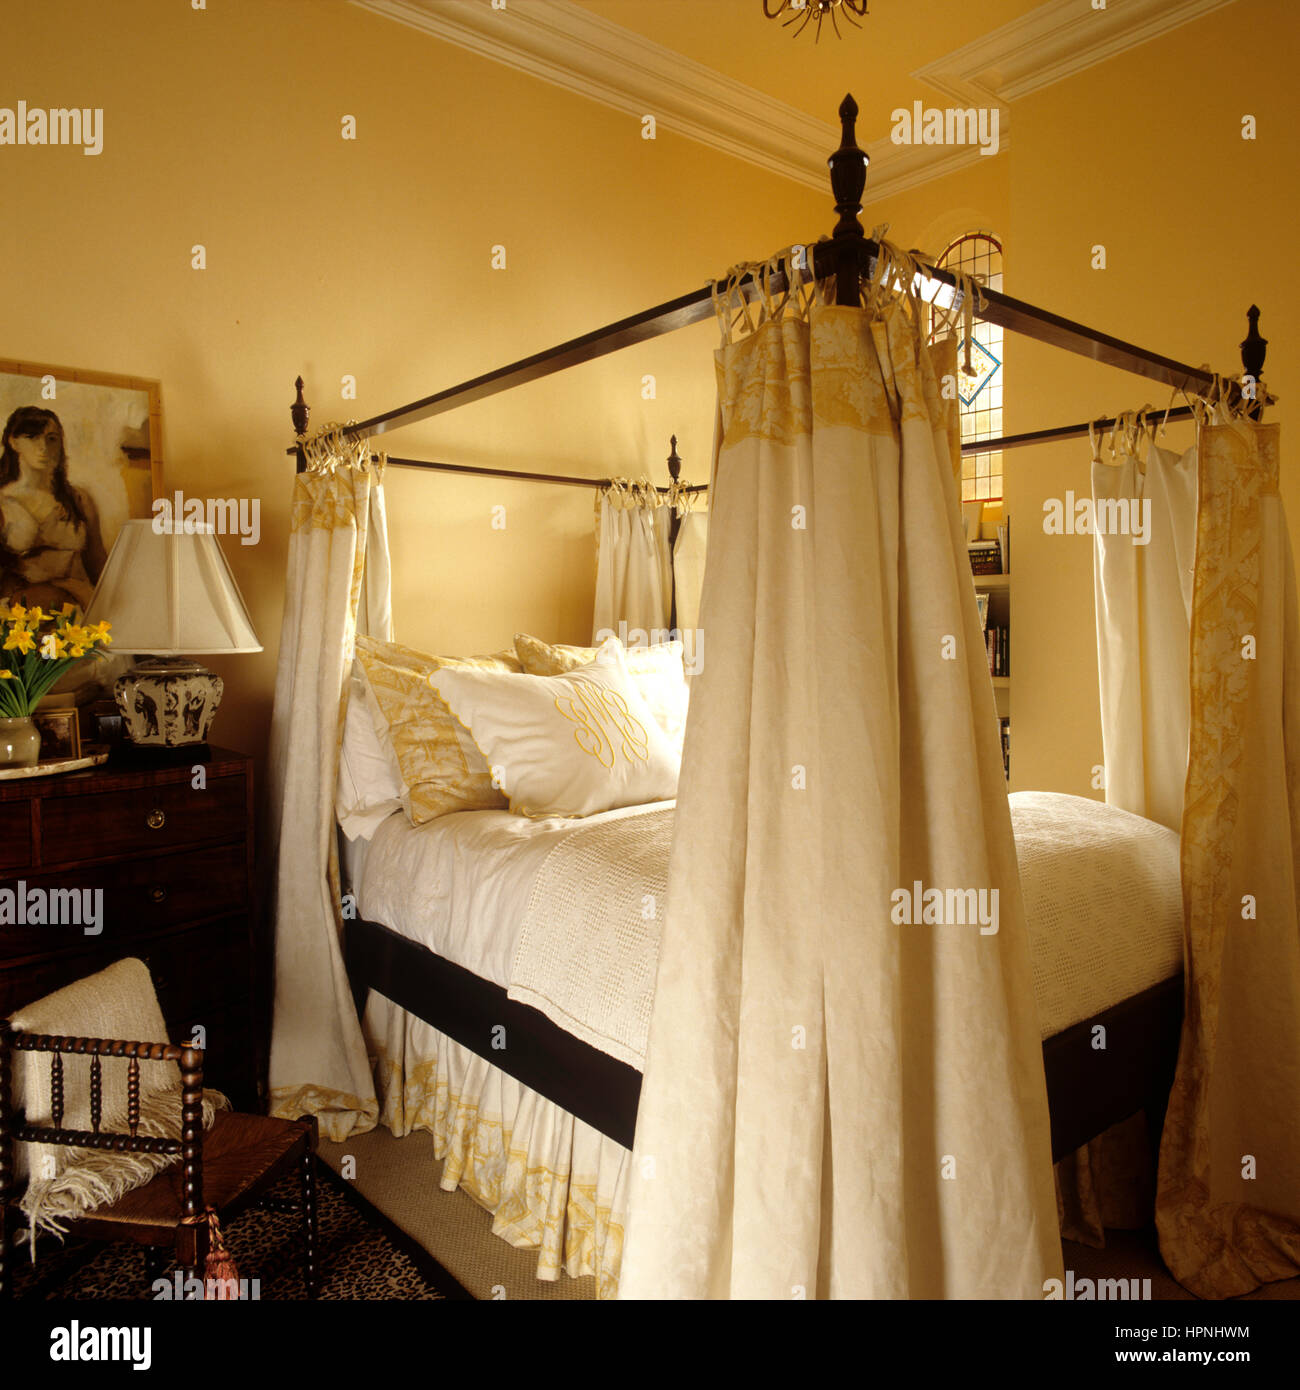 Un lit à baldaquin Photo Stock - Alamy